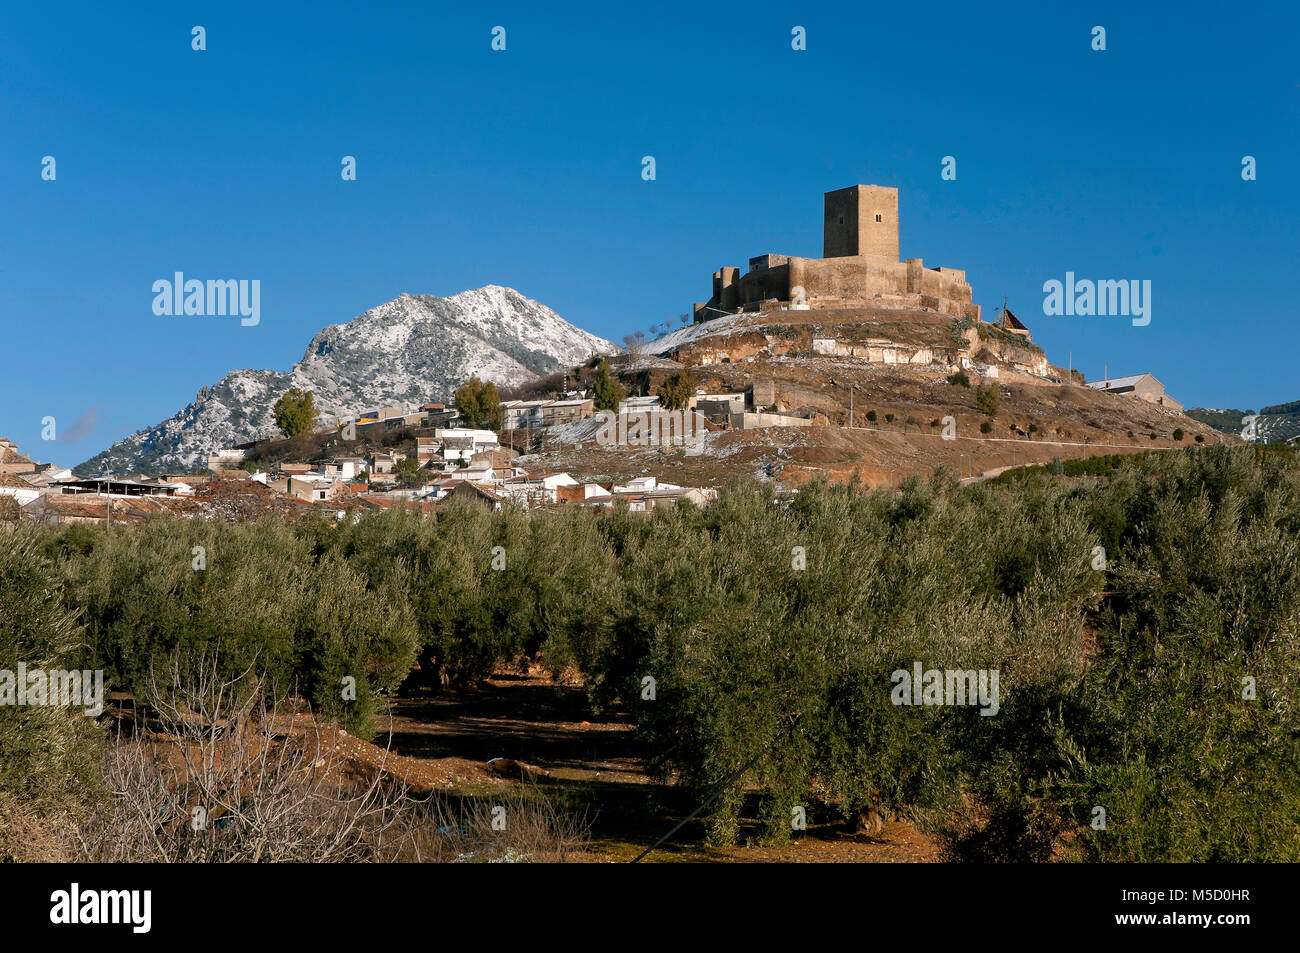 Paysage de neige, château et oliveraie, Martos, Jaen province, région d'Andalousie, Espagne, Europe Banque D'Images